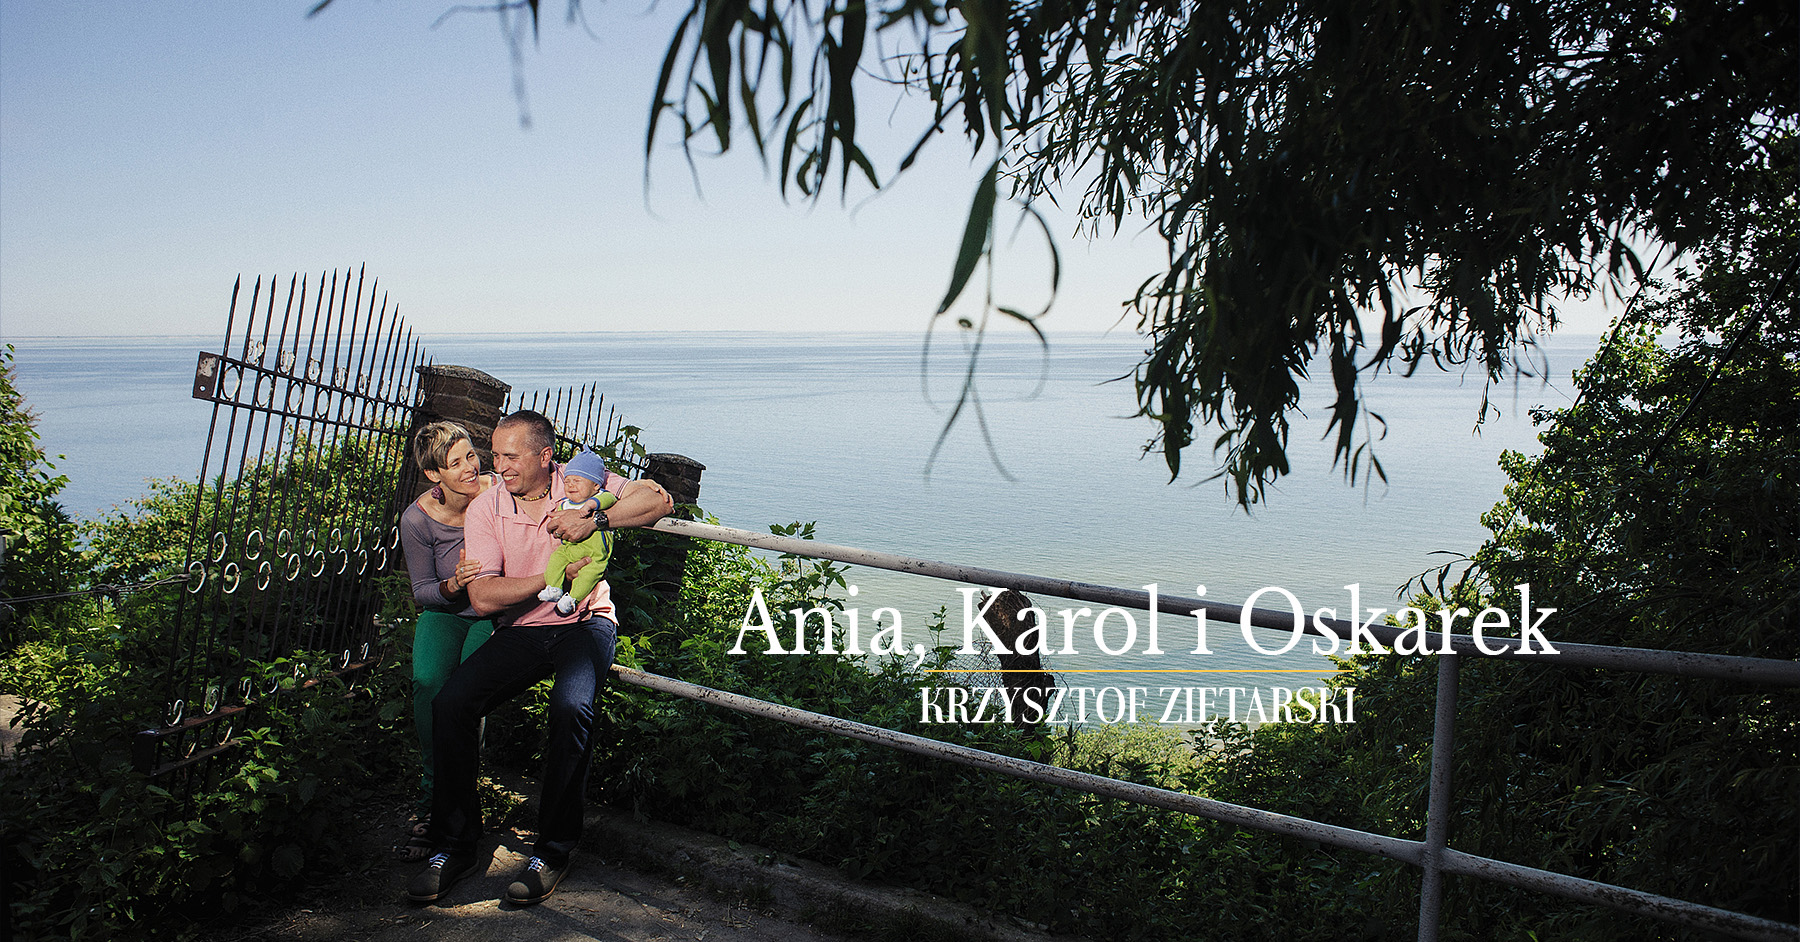 Ania, Karol i Oskarek - Fotografia rodzinna Gdynia